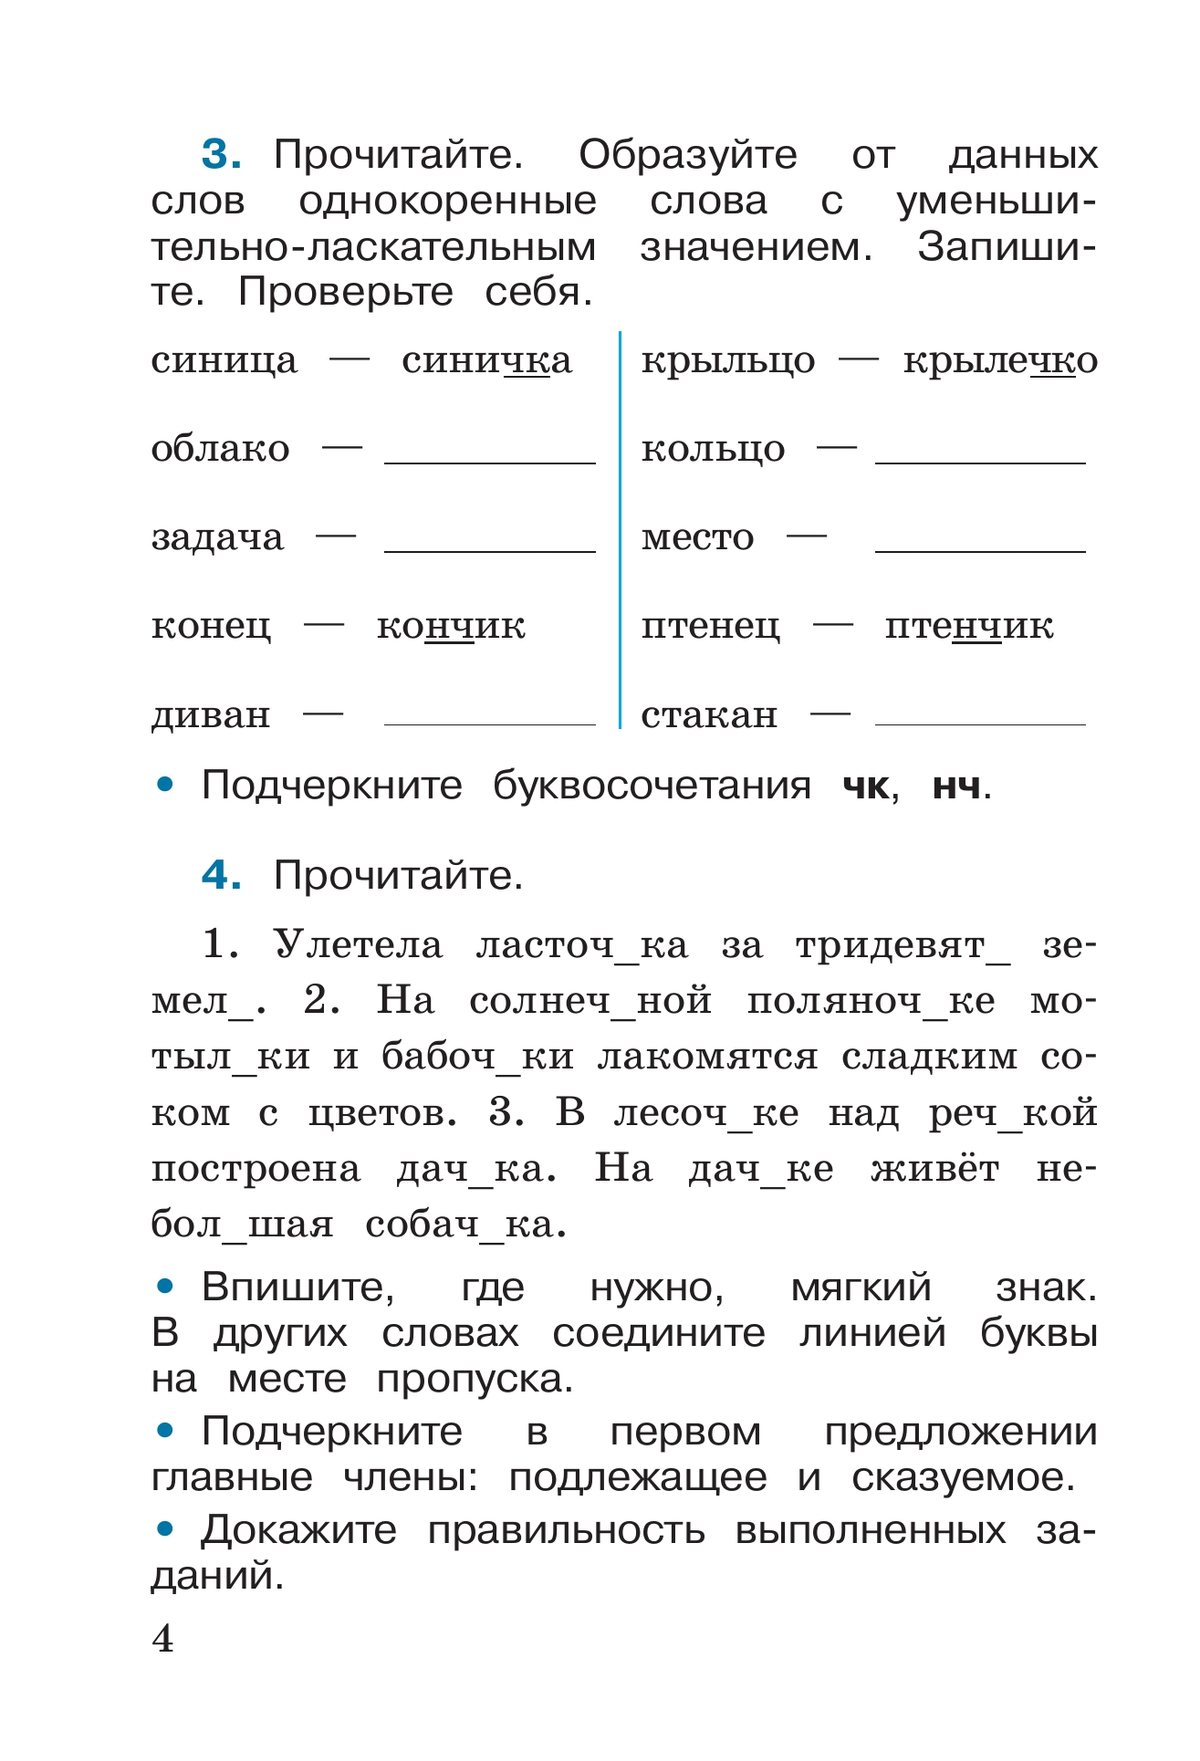 Русский язык. Рабочая тетрадь. 2 класс. В 2-х ч. Ч. 2 7